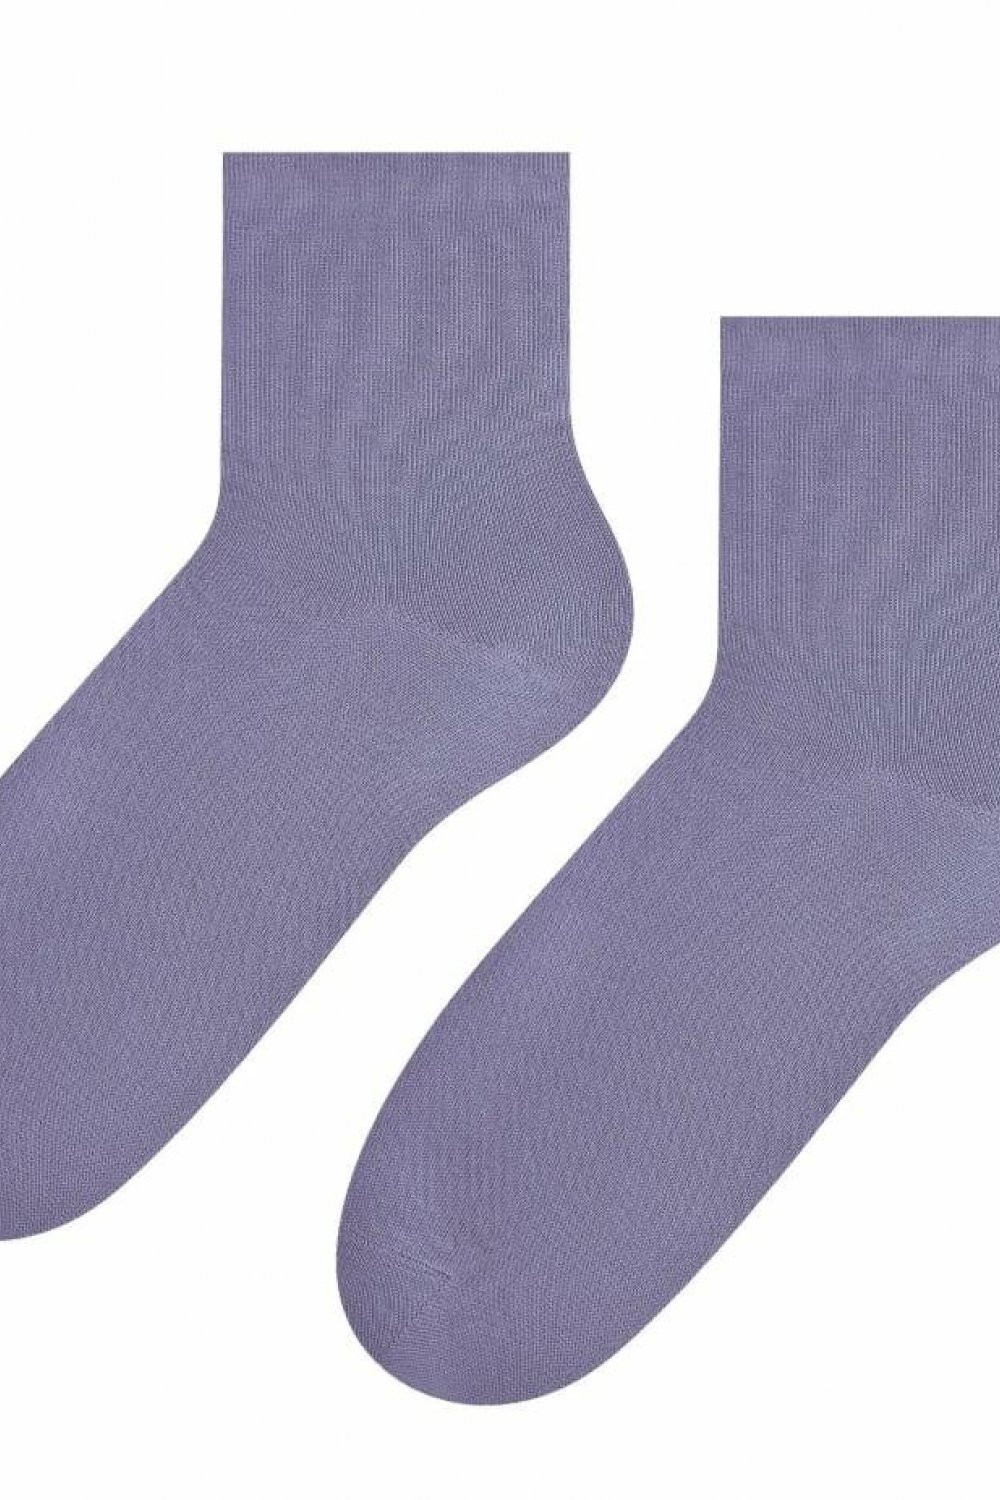 Dámské ponožky 037 dark grey - Steven šedá 35/37